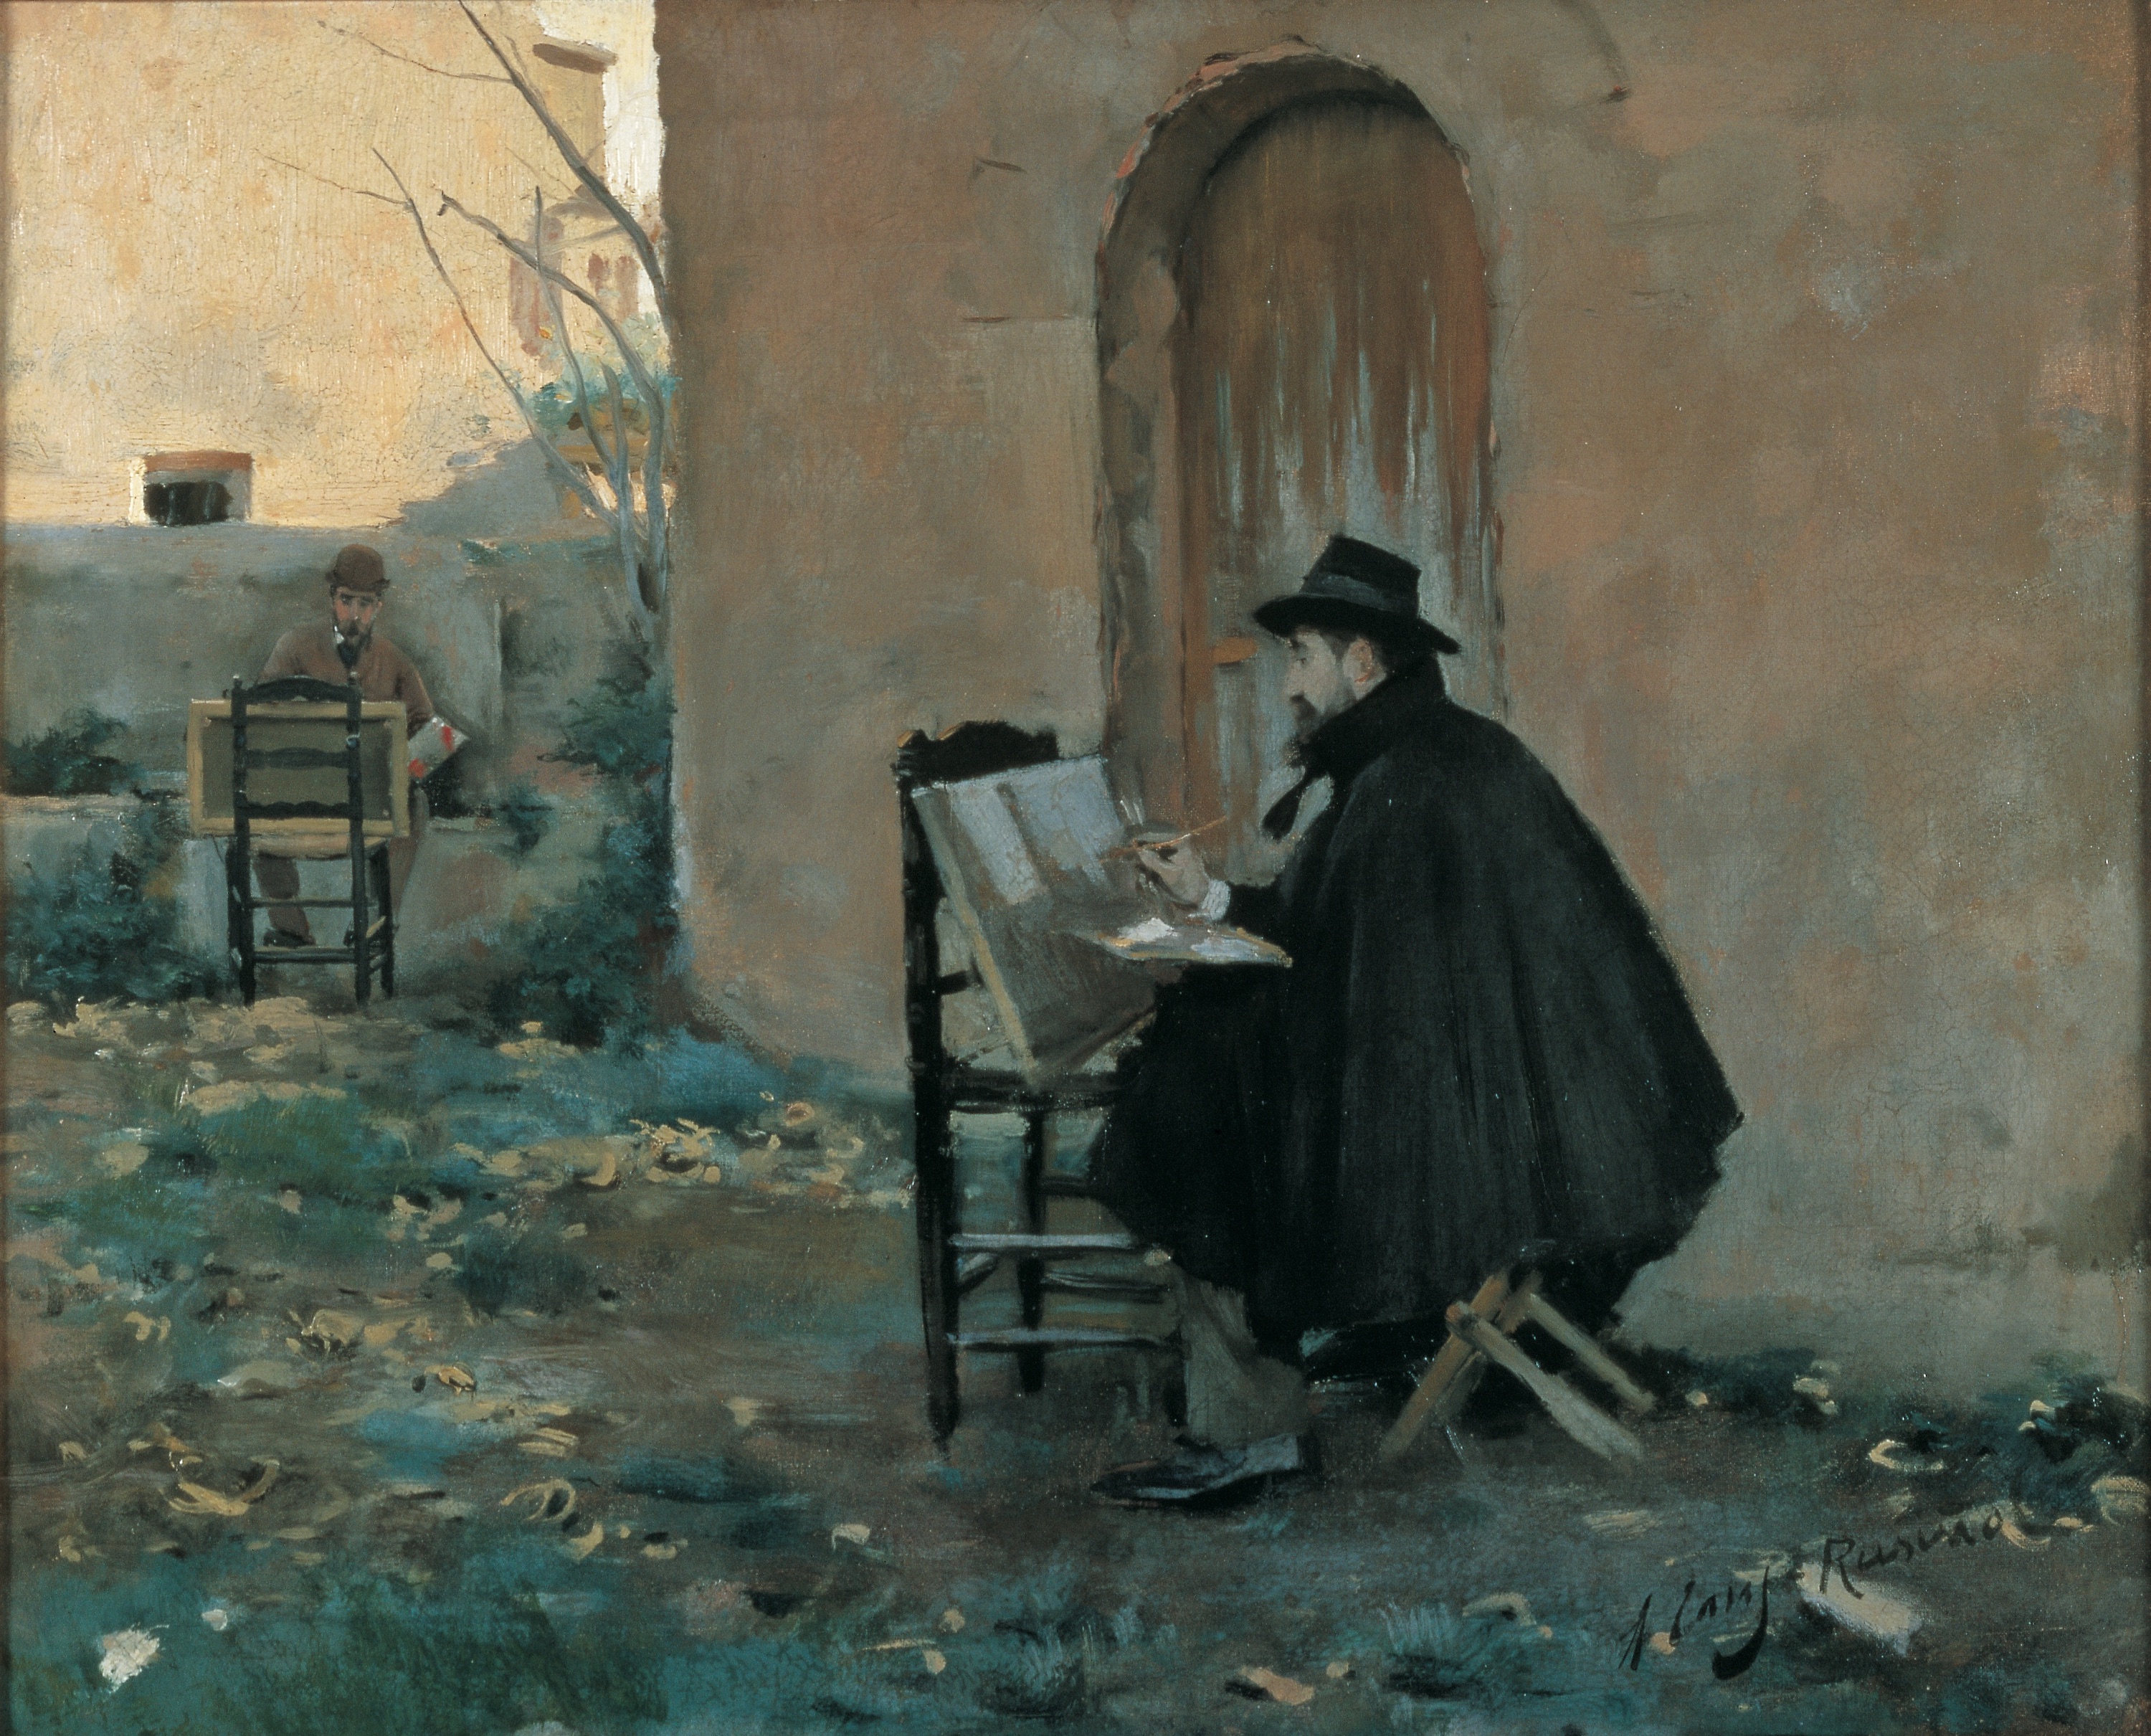 Сликајући једни друге by Santiago Rusinol and Ramon Casas - 1890.година - 60 x 73 cm 